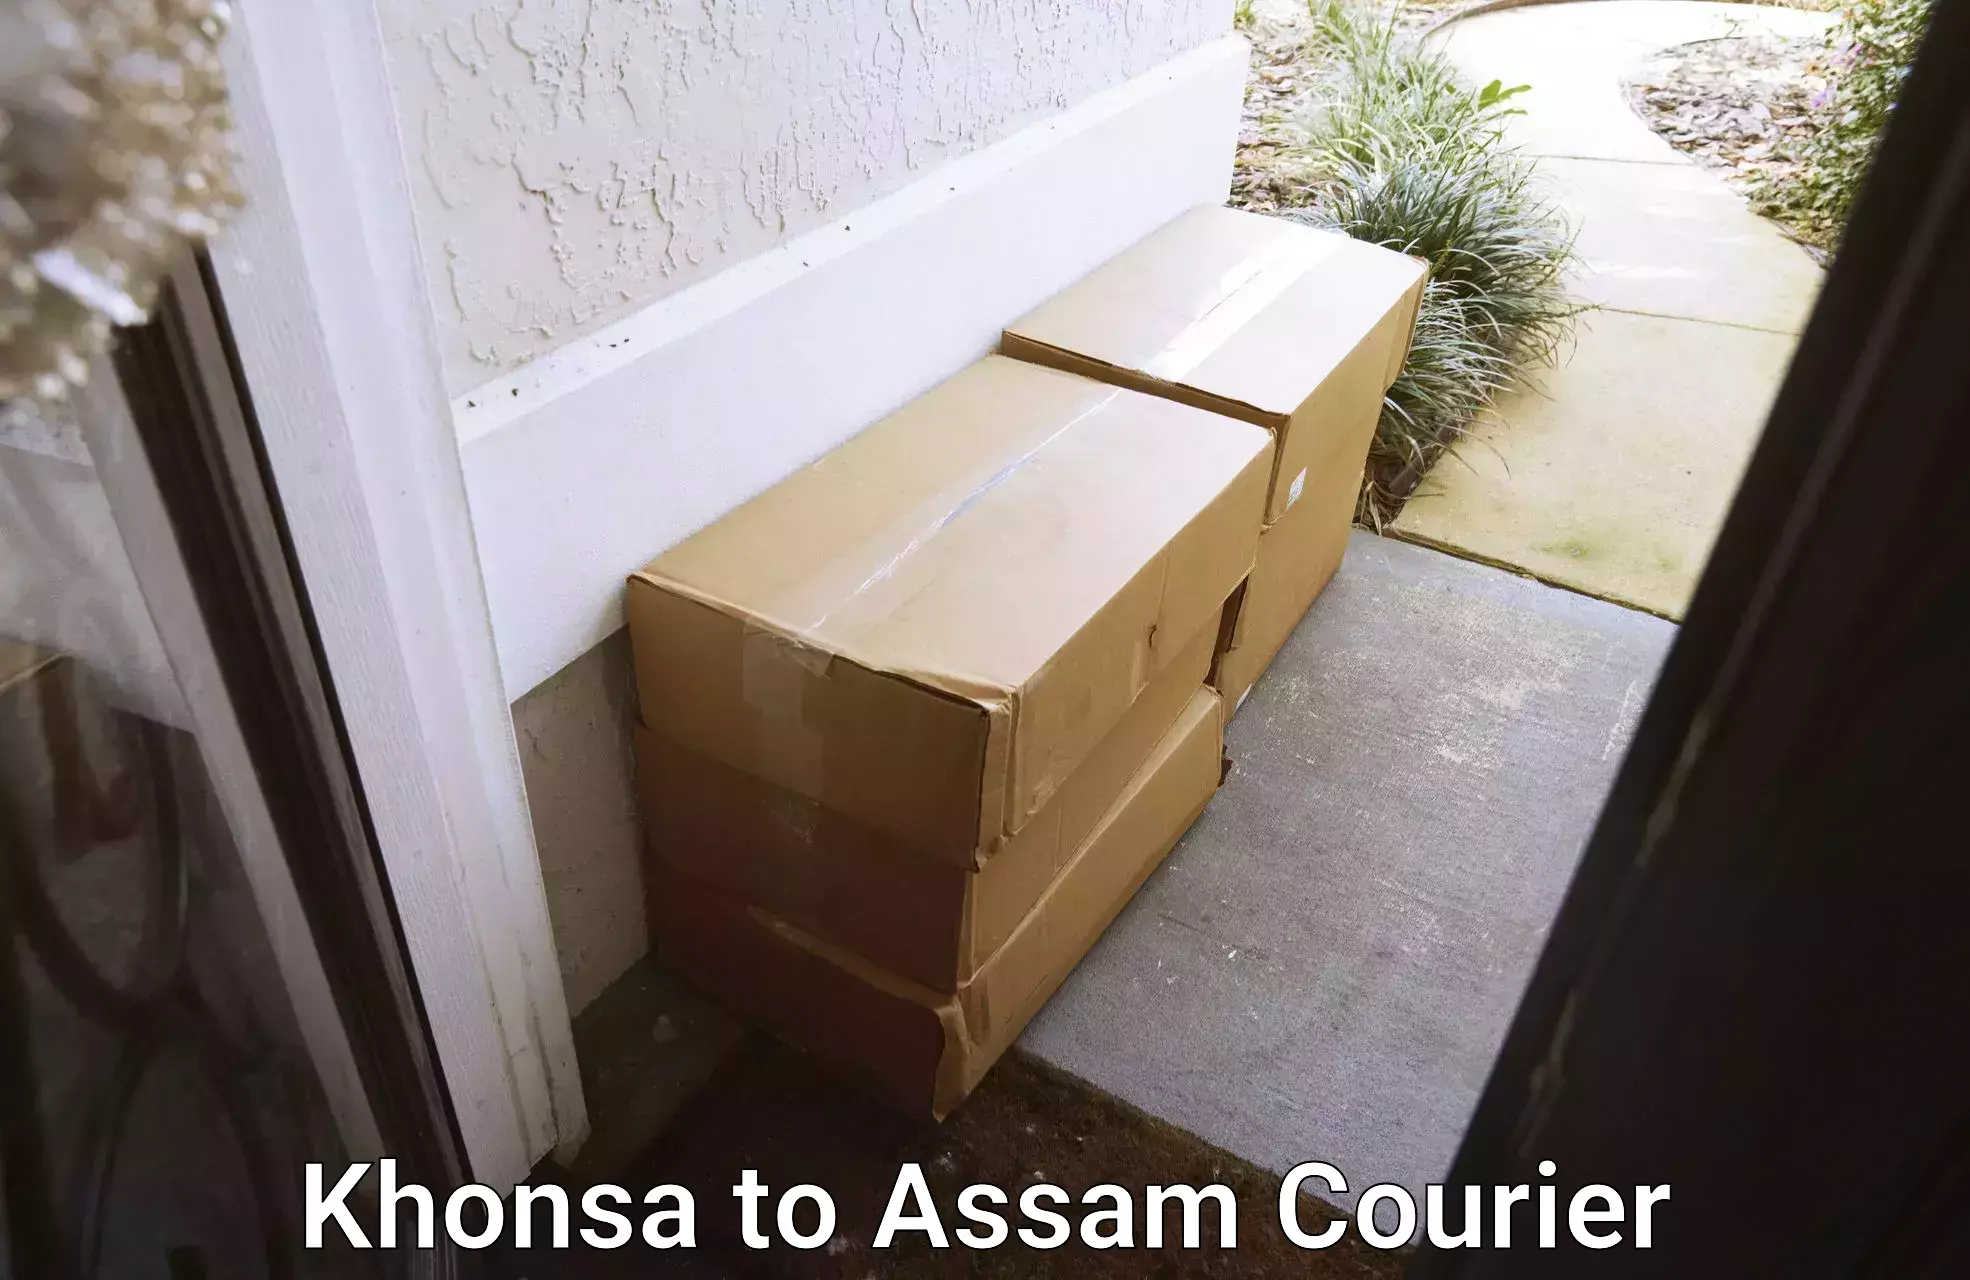 Modern parcel services Khonsa to Assam